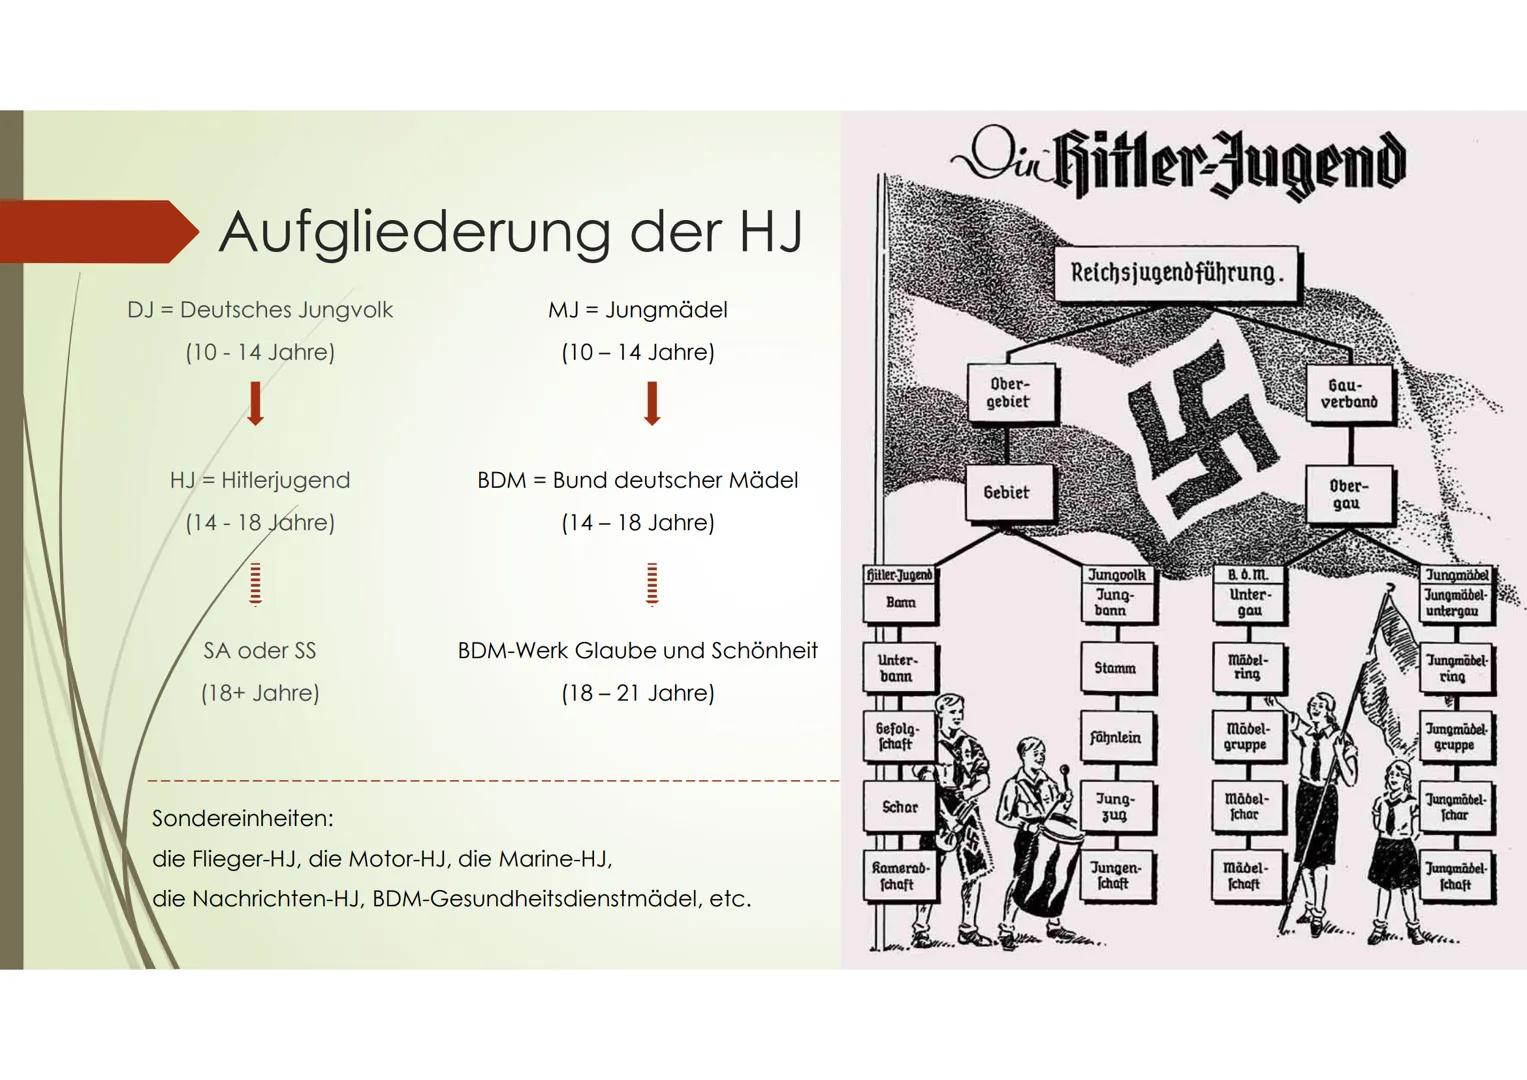 Die Hitlerjugend &
Der Bund deutscher Mädel Gliederung
➡ Die NS-Jugendorganisation
Aufgliederung
➡ Allgemein
➡ Böblingen/Sindelfingen
Hitler